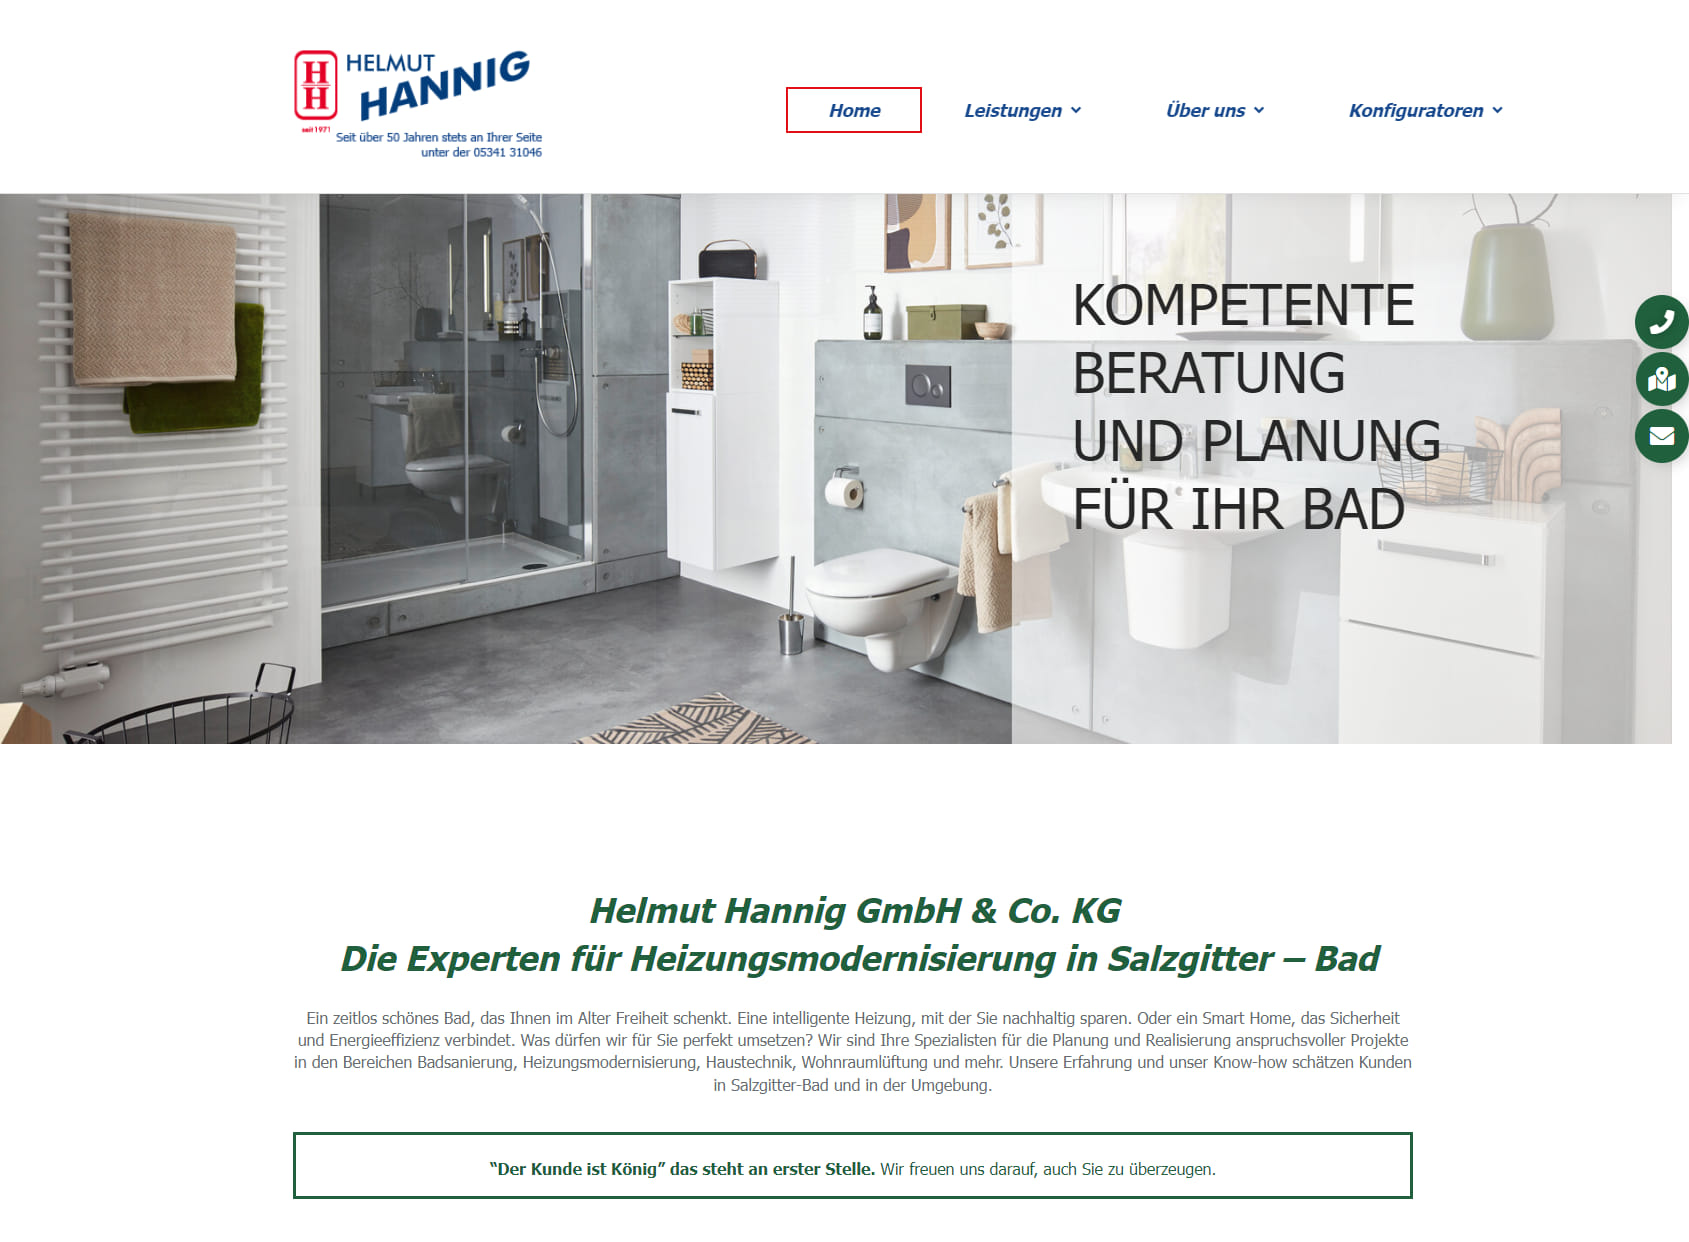 Helmut Hannig GmbH & Co. KG